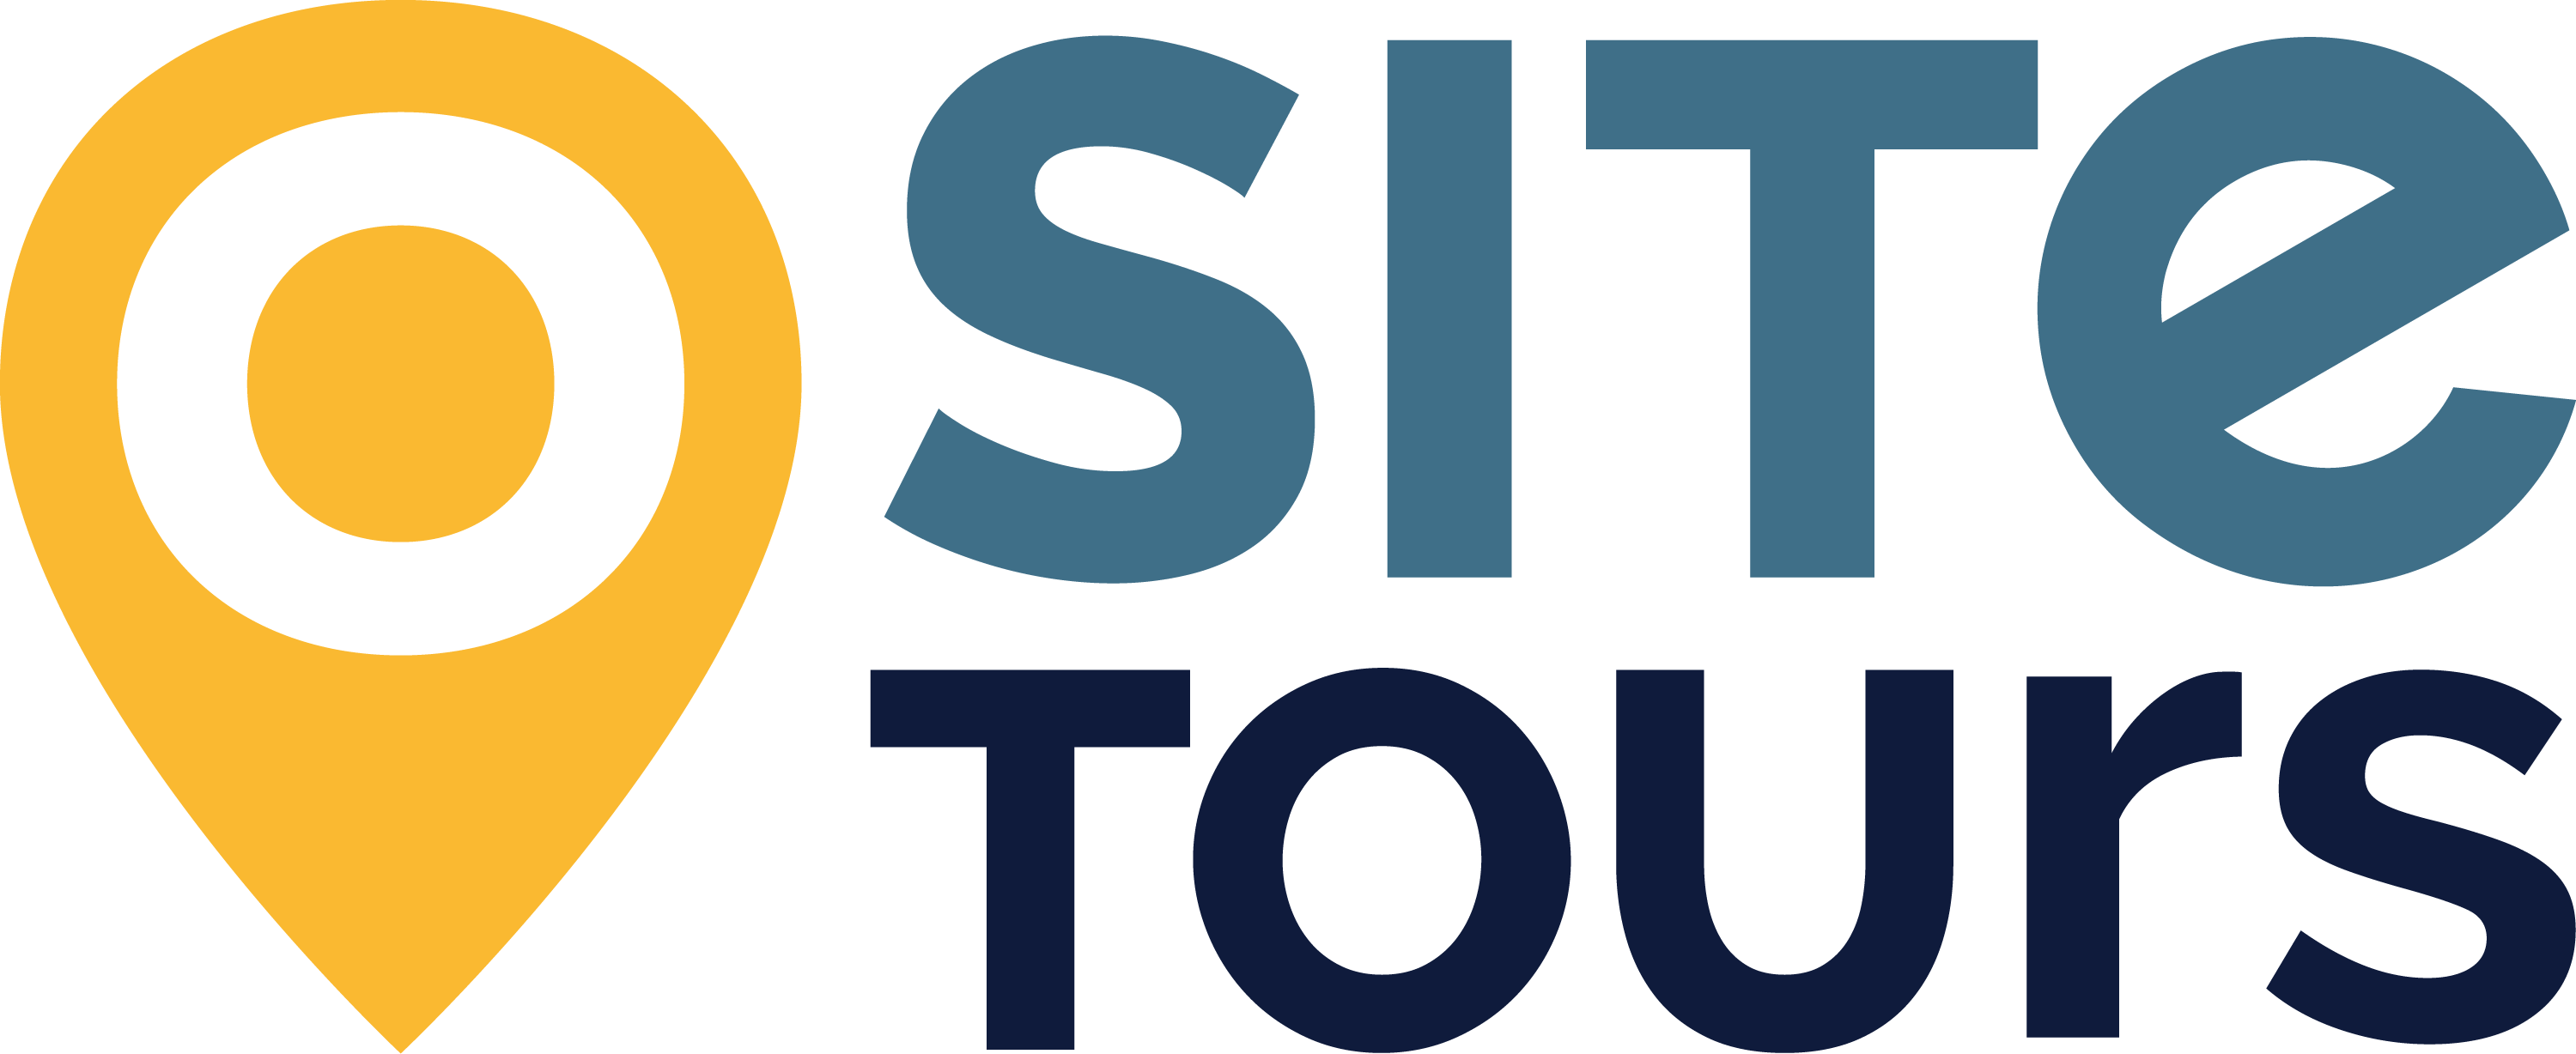 Site Tours